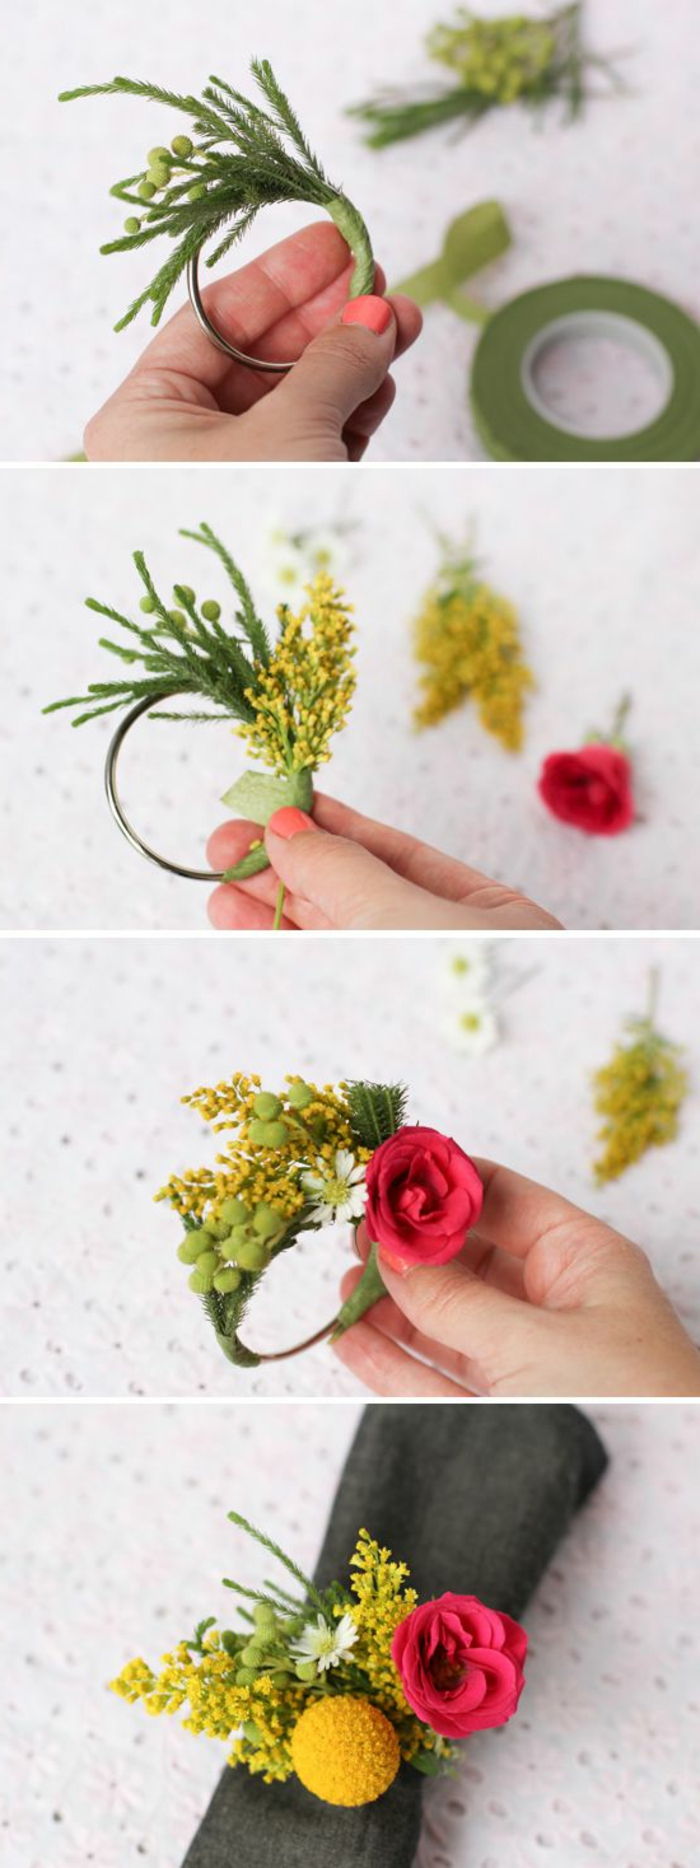 Coola idéer - Gör bordsdekoration själv, små kransar med blommor, servett